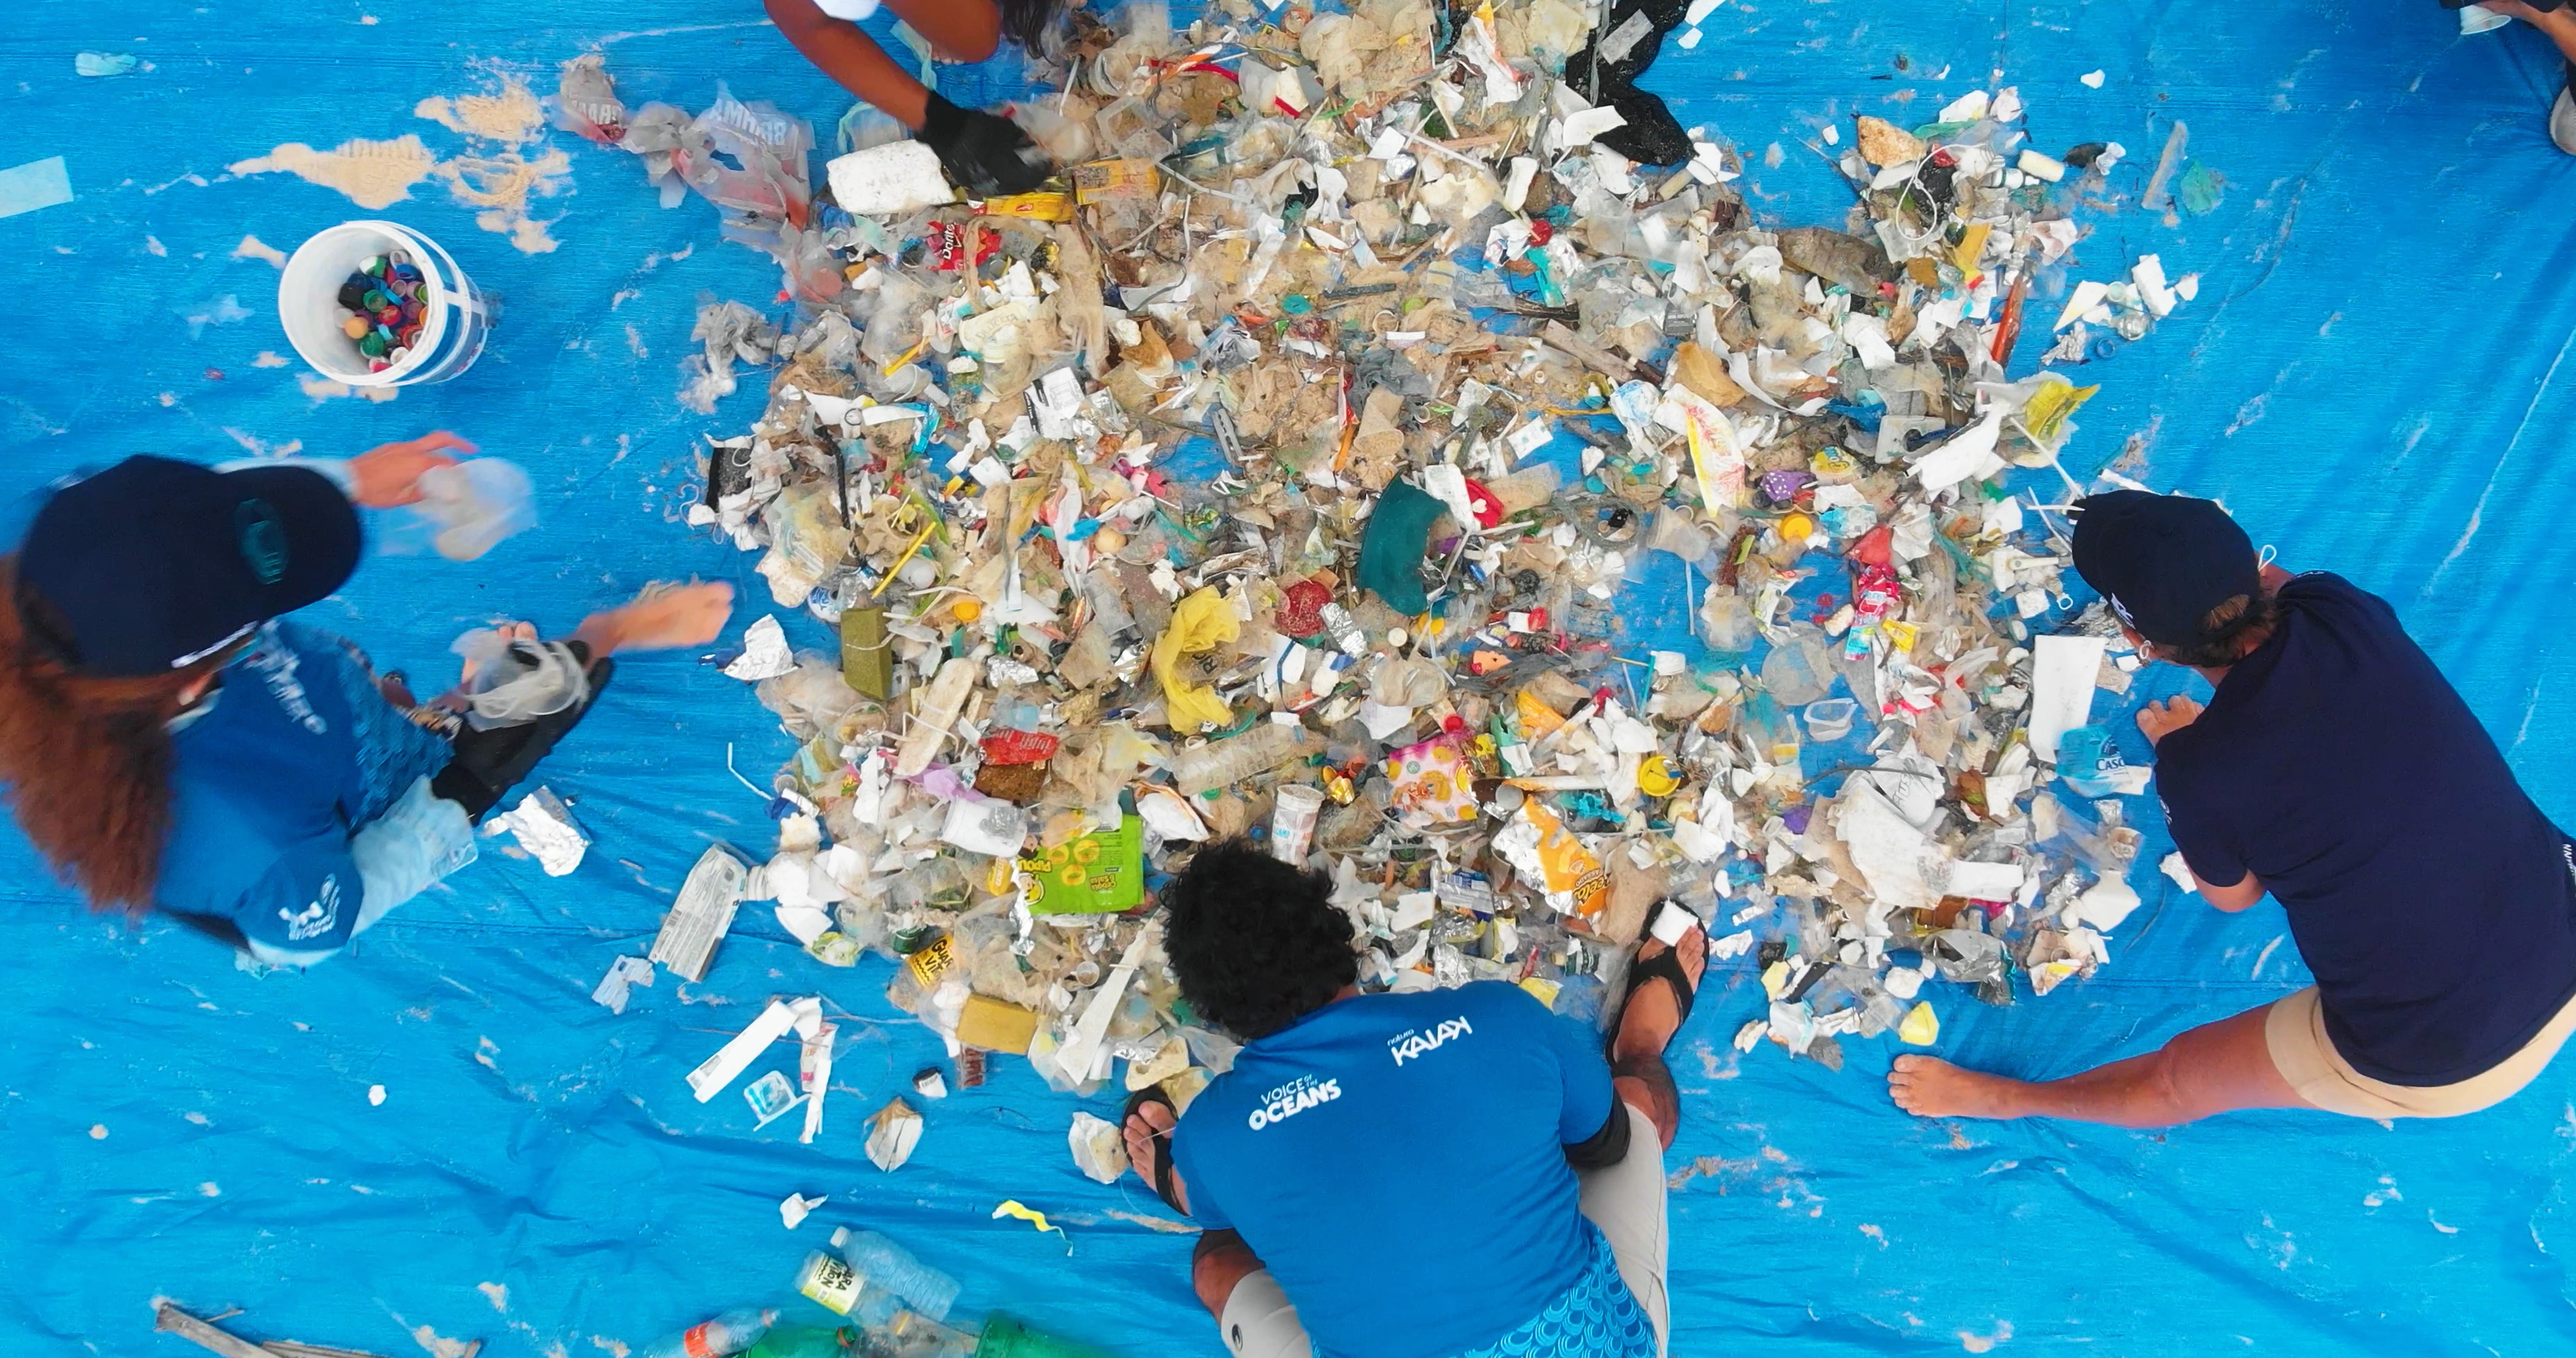 A expedição Voz dos Oceanos também realiza ações de limpeza de praias junto a ONGs locais (Foto: Divulgação)